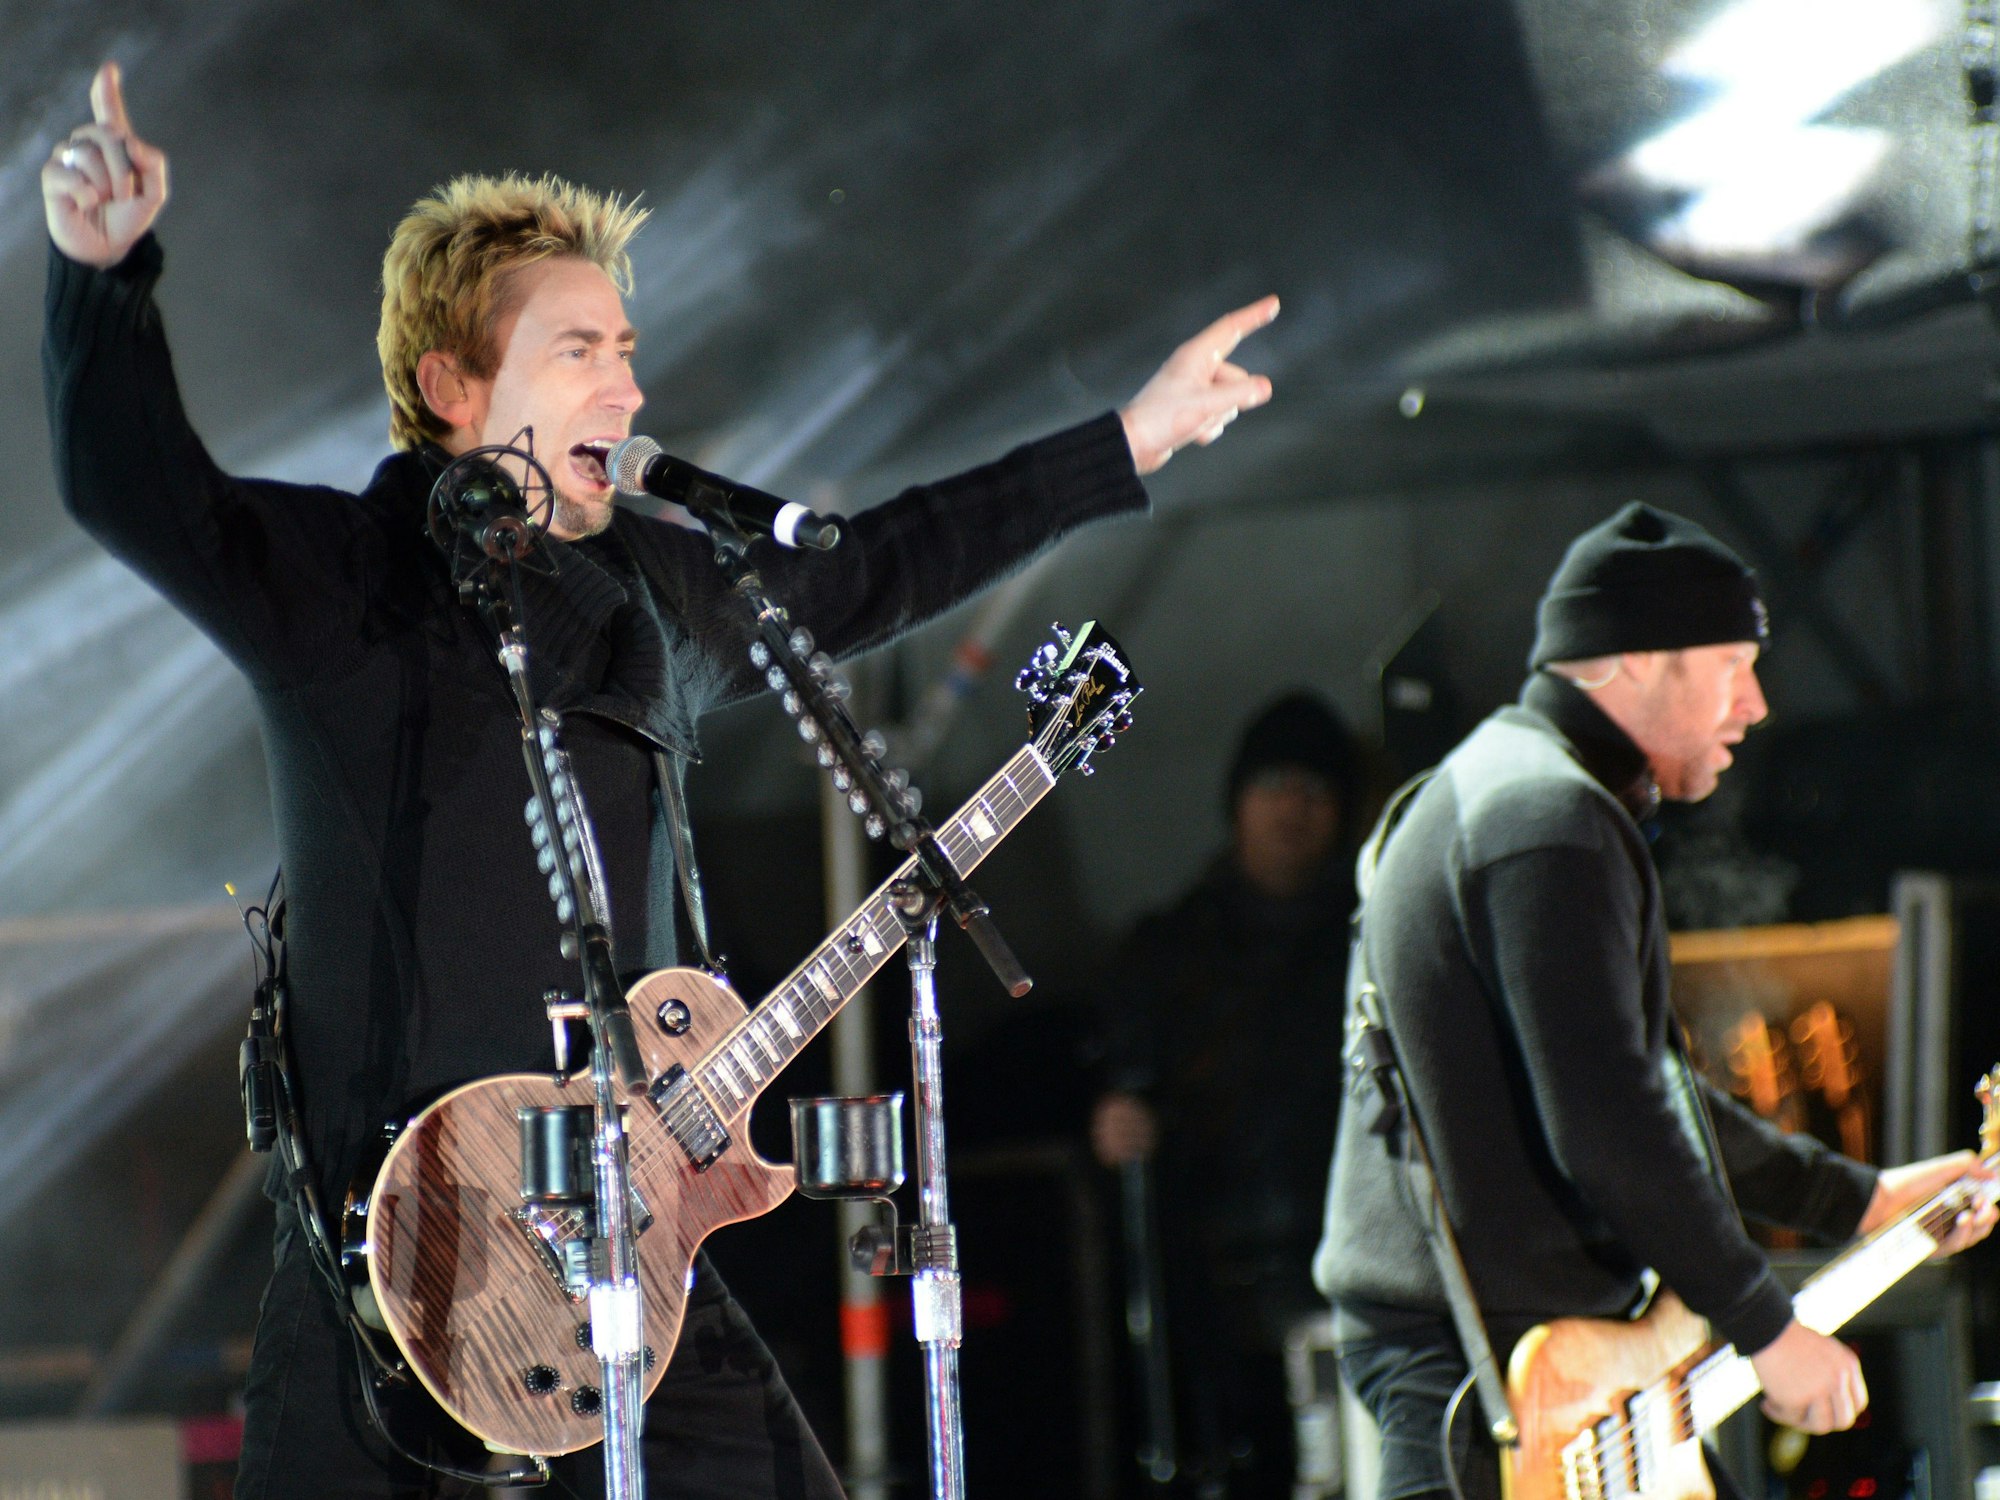 Frontmann Chad Kroeger steht mit der kanadischen Rockband Nickelback am 30. November 2013 im Tiroler Ischgl, Österreich, auf der Bühne.